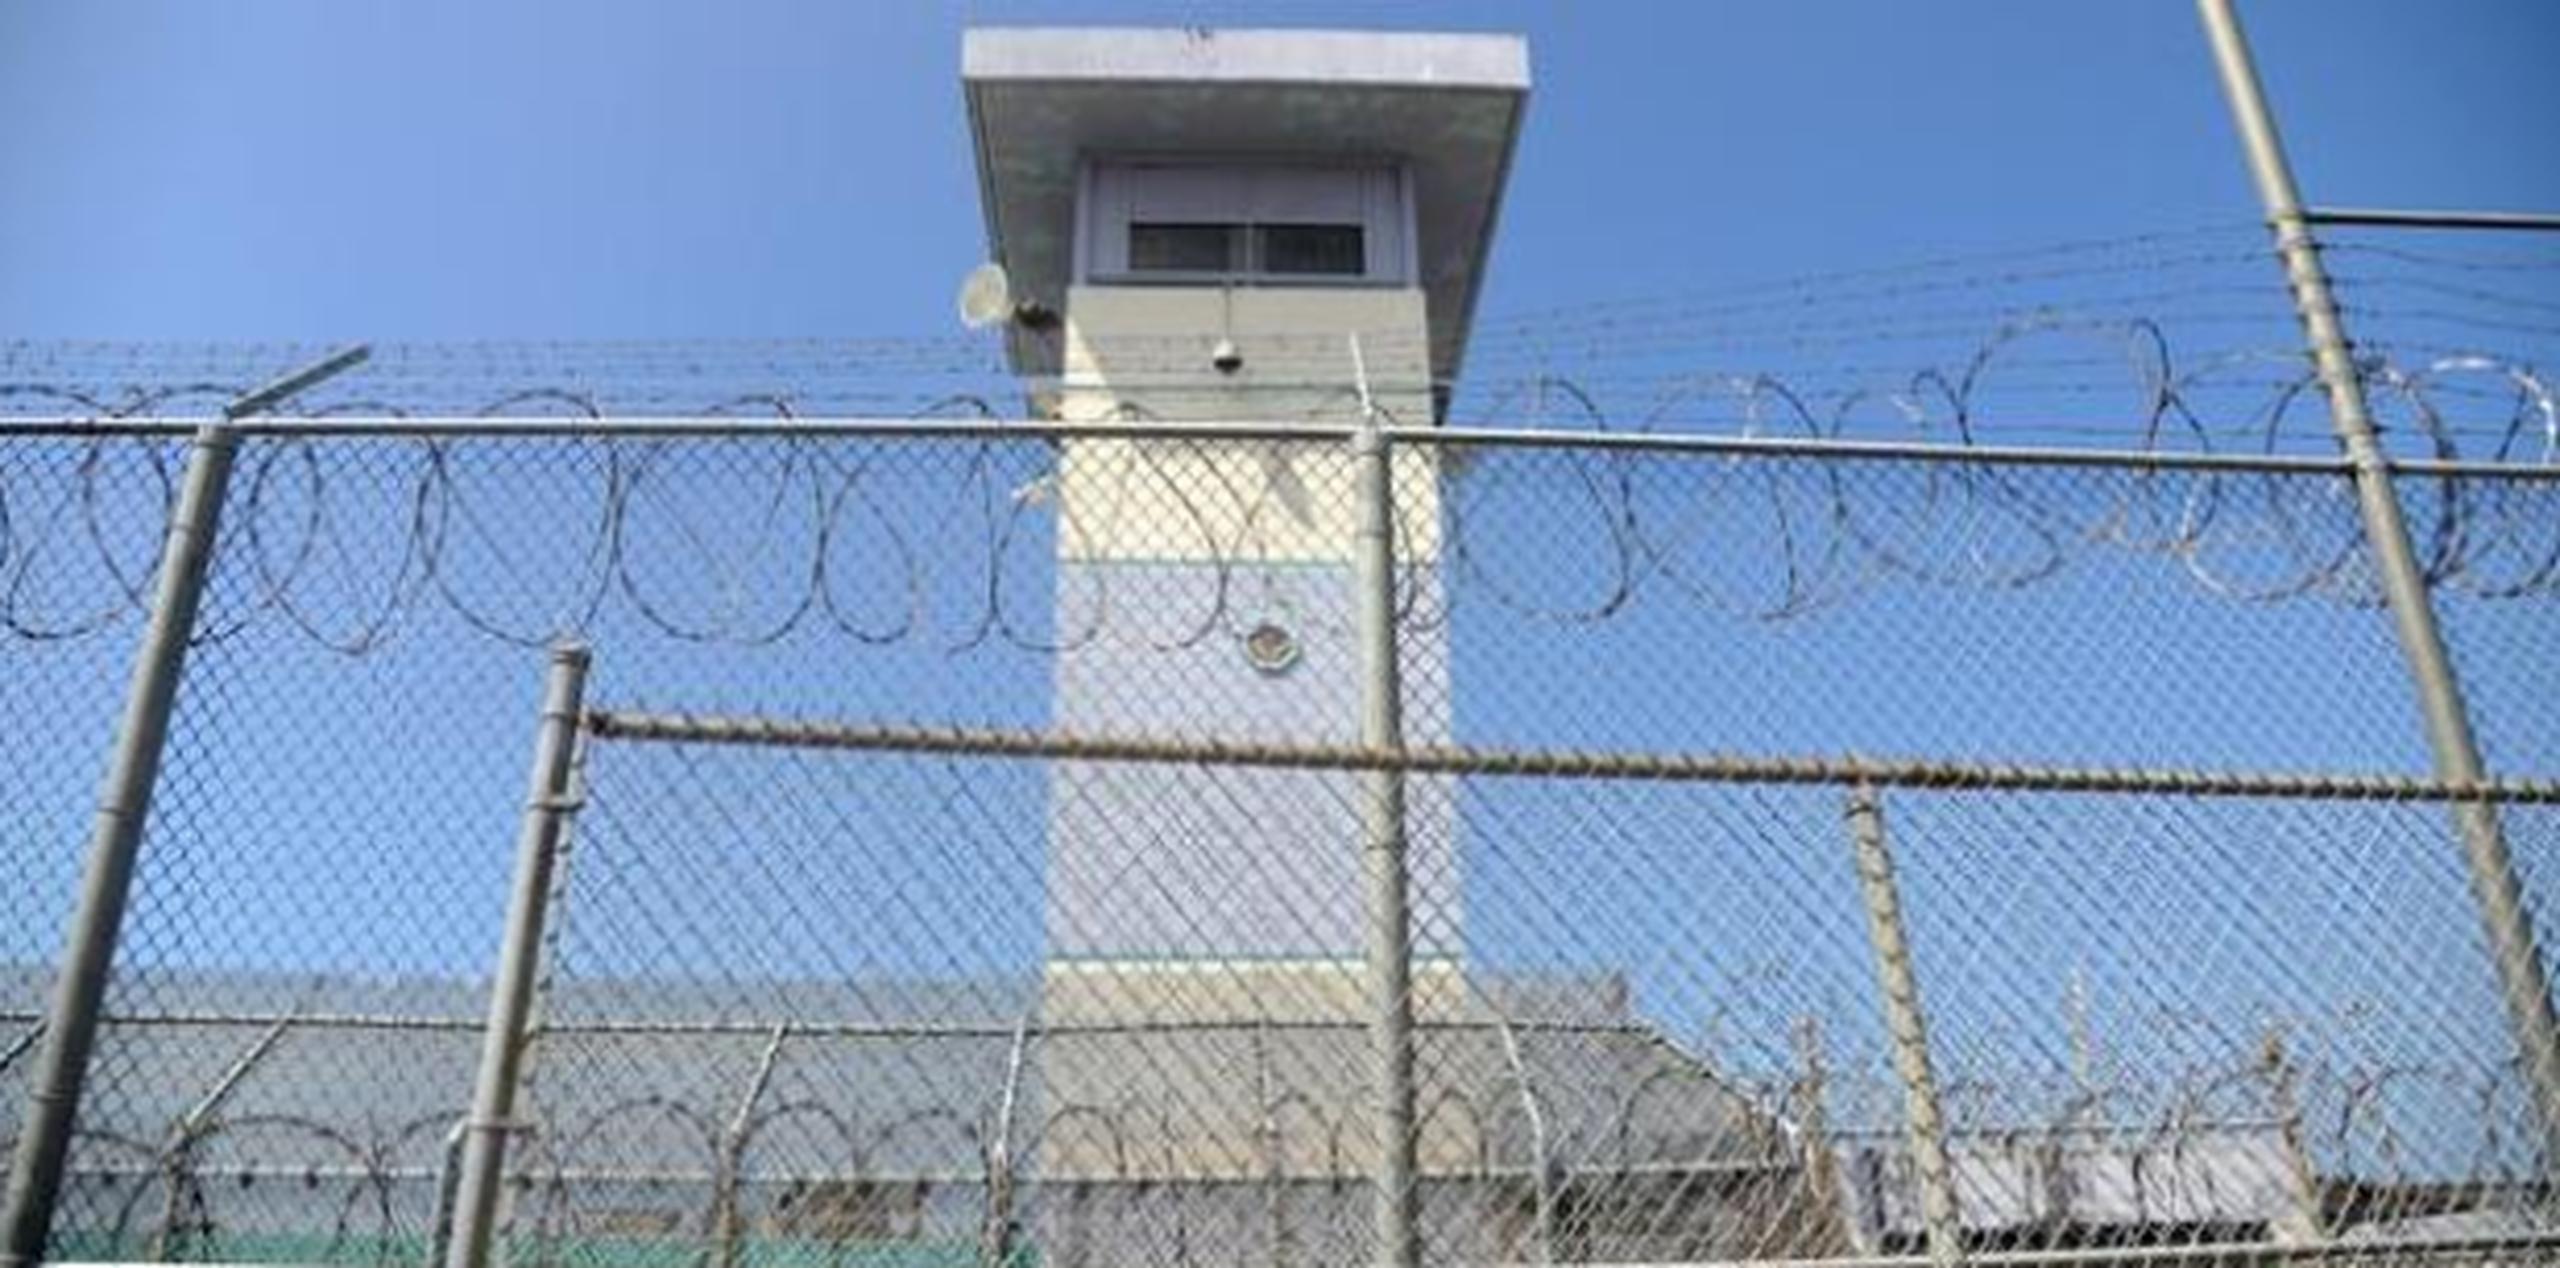 El acusado fue encarcelado en el Complejo Correccional de Bayamón. (Archivo)